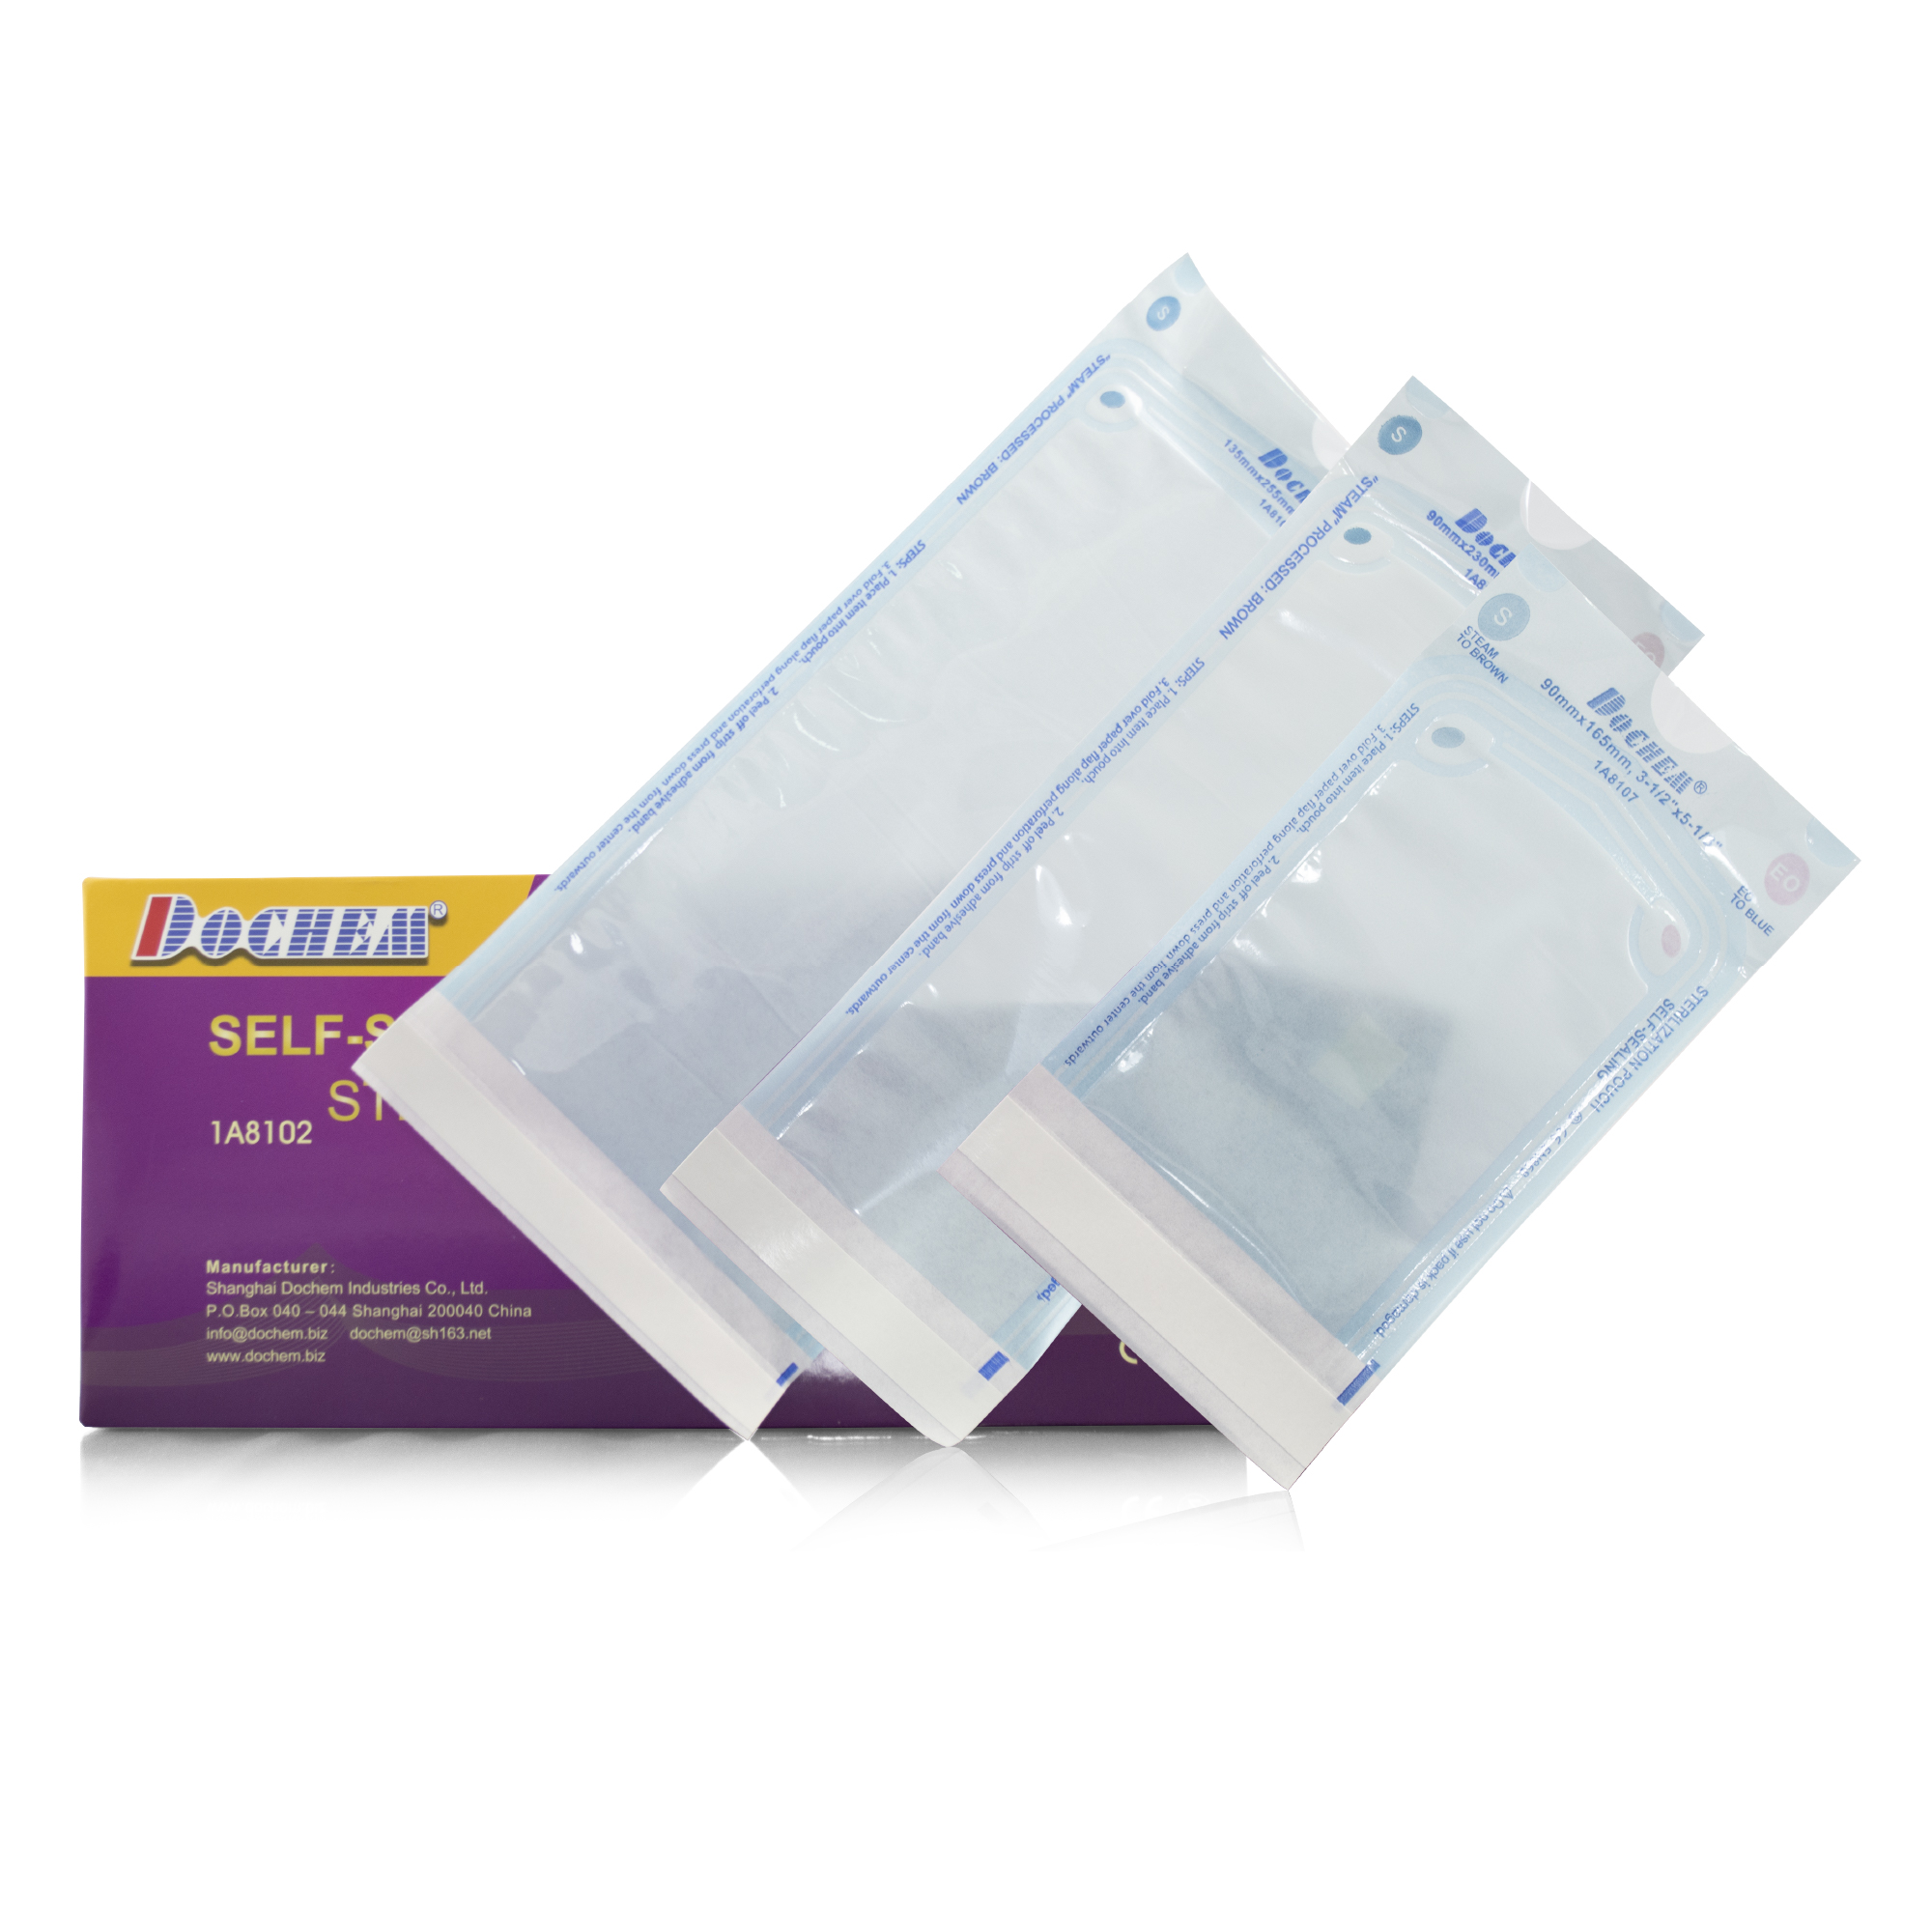 Lote de 3 paquetes de las bolsas Kraft para esterilizacion ProSteri